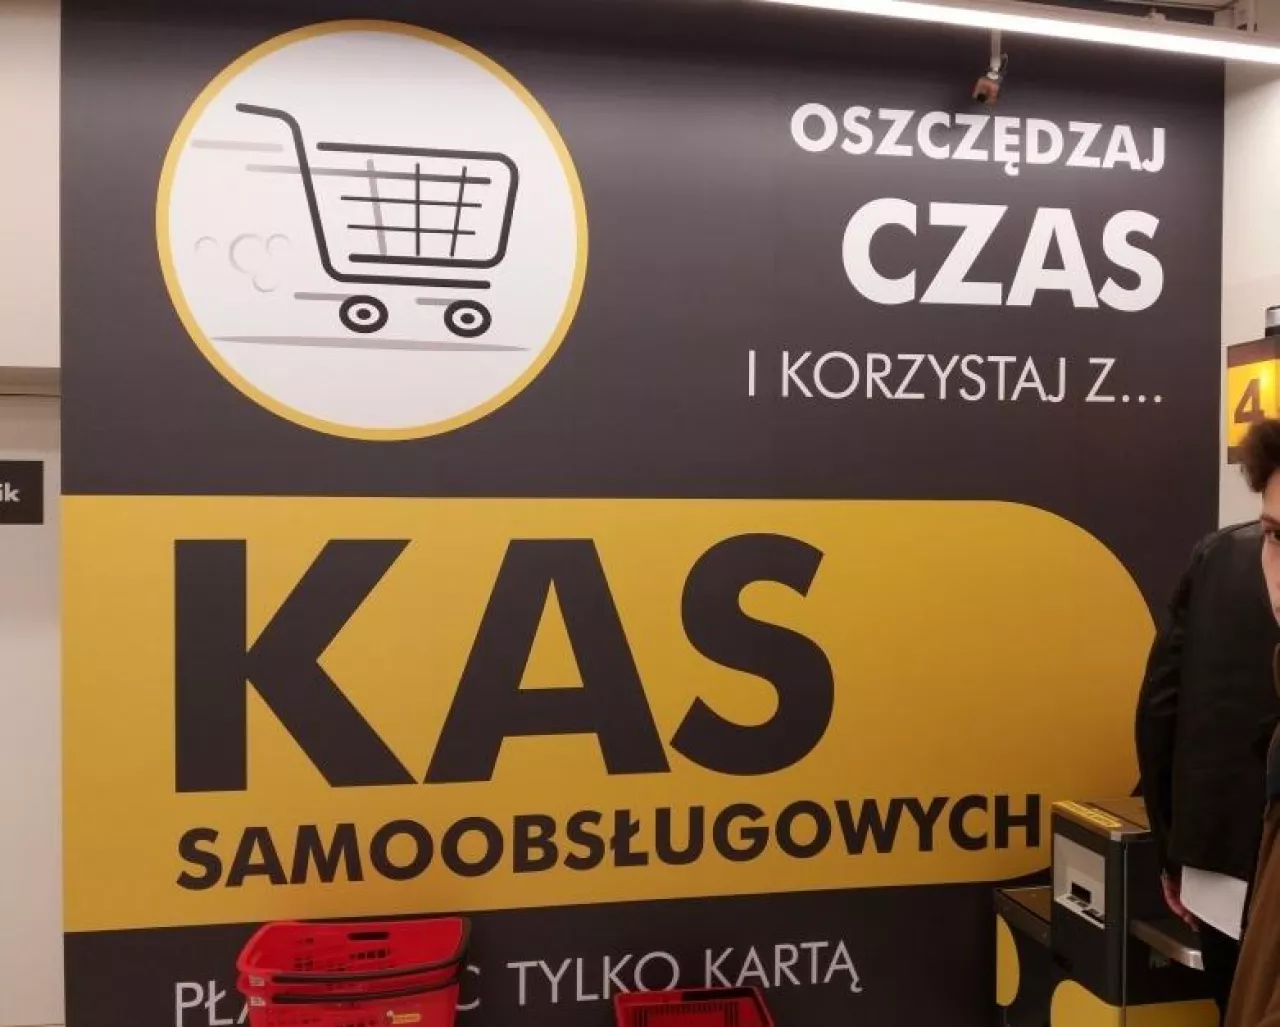 Na zdj. kasy samoobsługowe w warszawskim sklepie Biedronka (fot. wiadomoscihandlowe.pl)